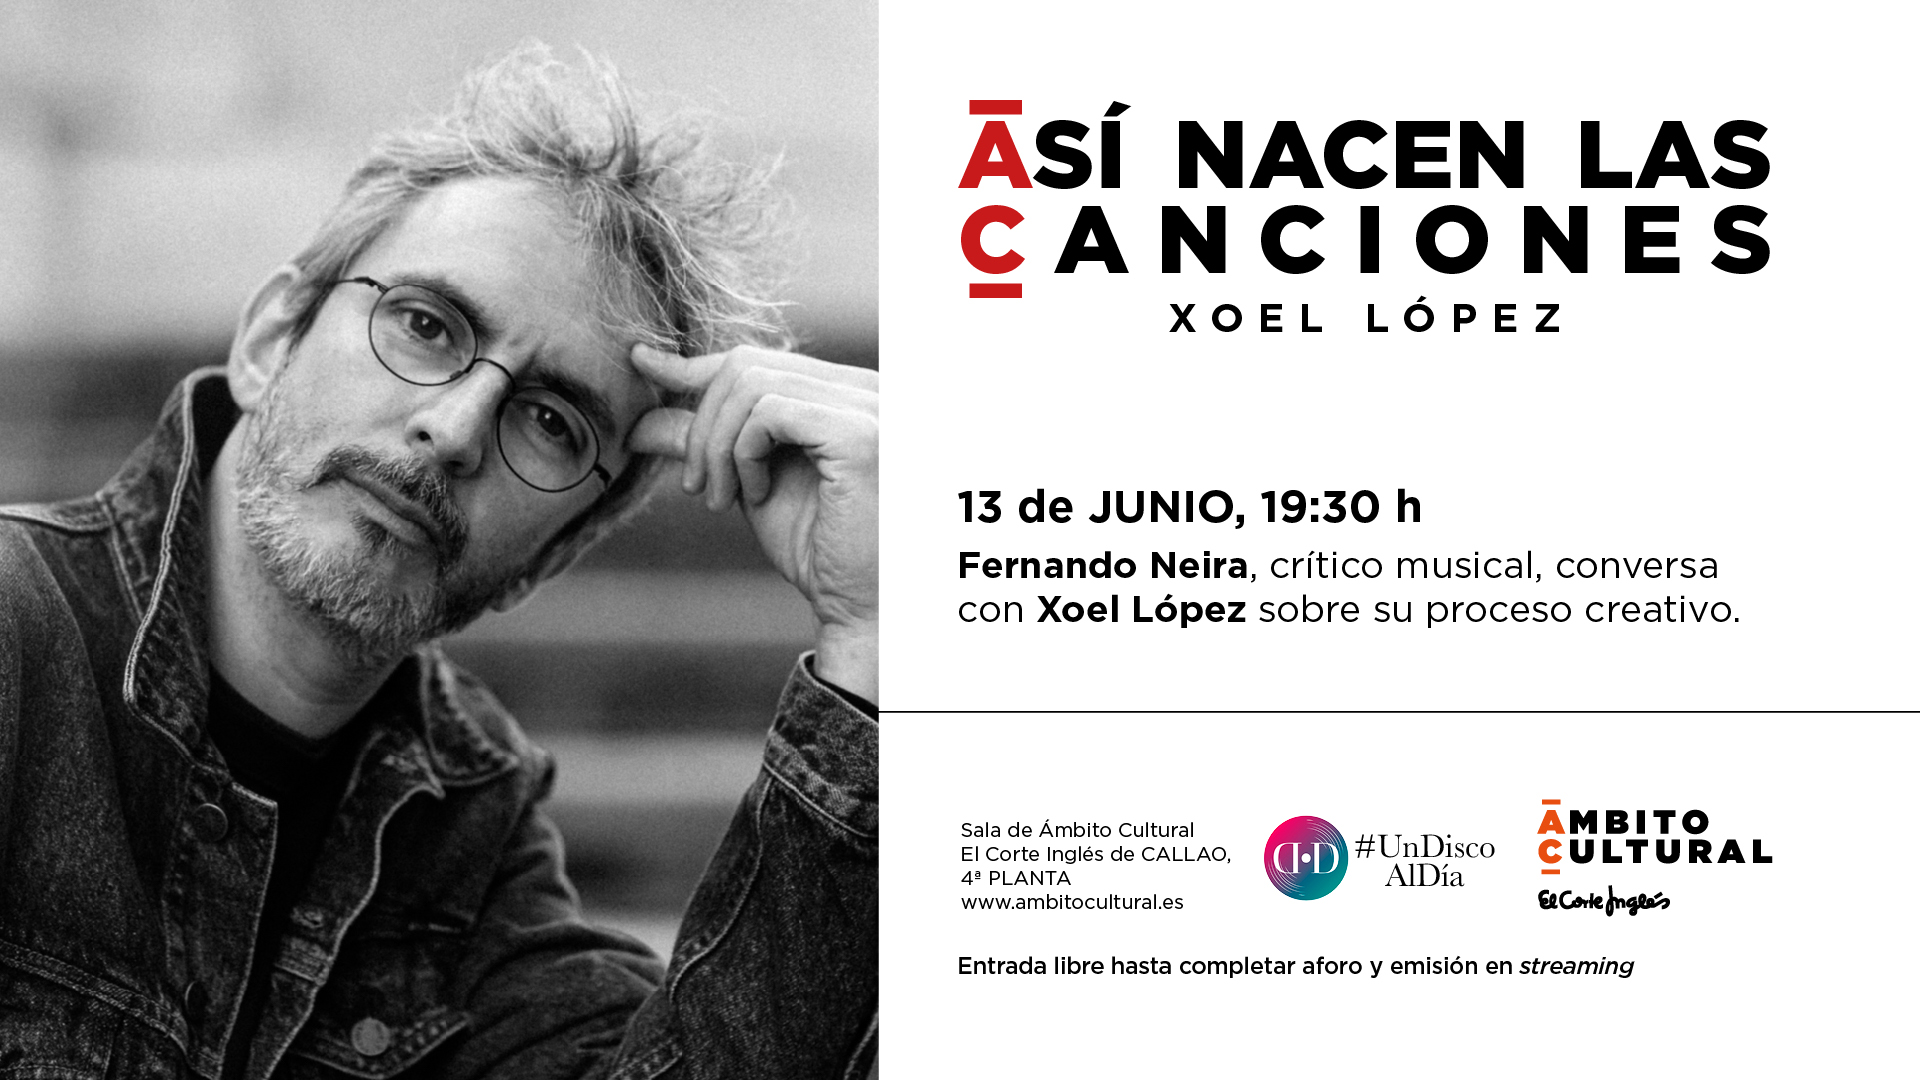 El Corte Inglés on Twitter: "No te el encuentro del artista @xoellopez con @fneirad #Madrid. 🗓️ Martes 13/06 | 19:30h 📍Sala @ambitocultural de Corte Inglés de Callao, Planta 4